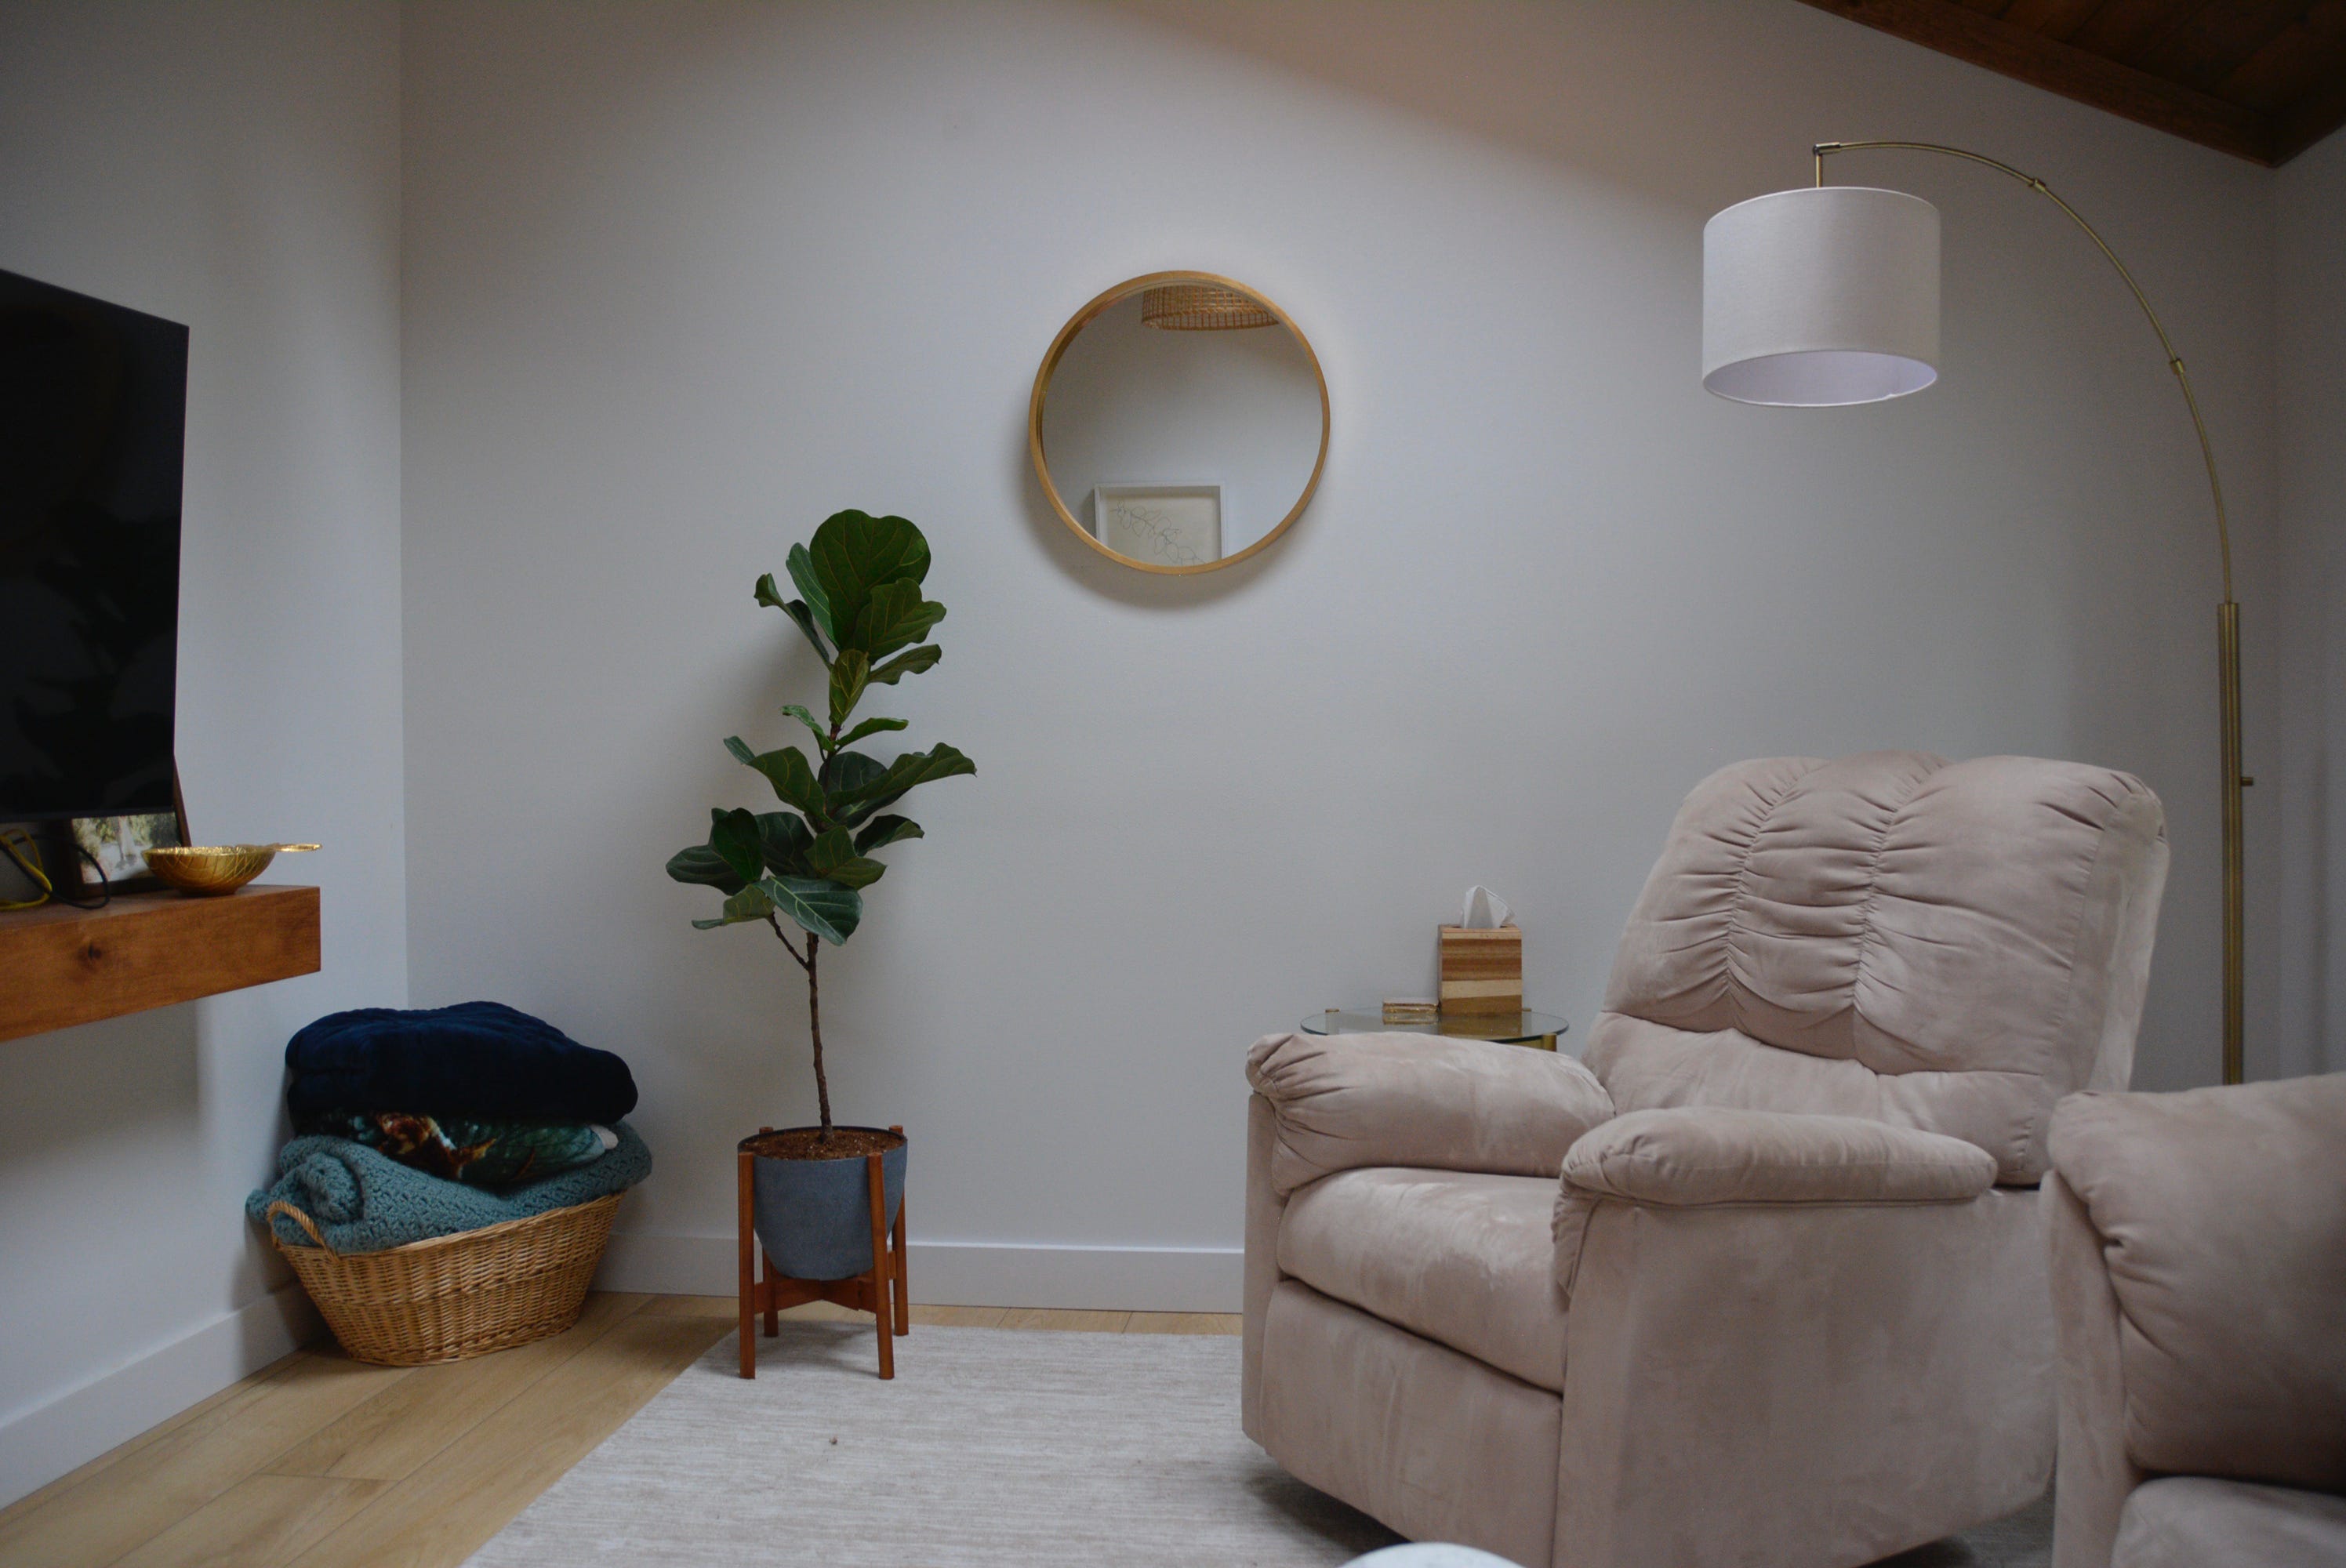 Kleiner runder Spiegel und Pflanze vor weißer Wand